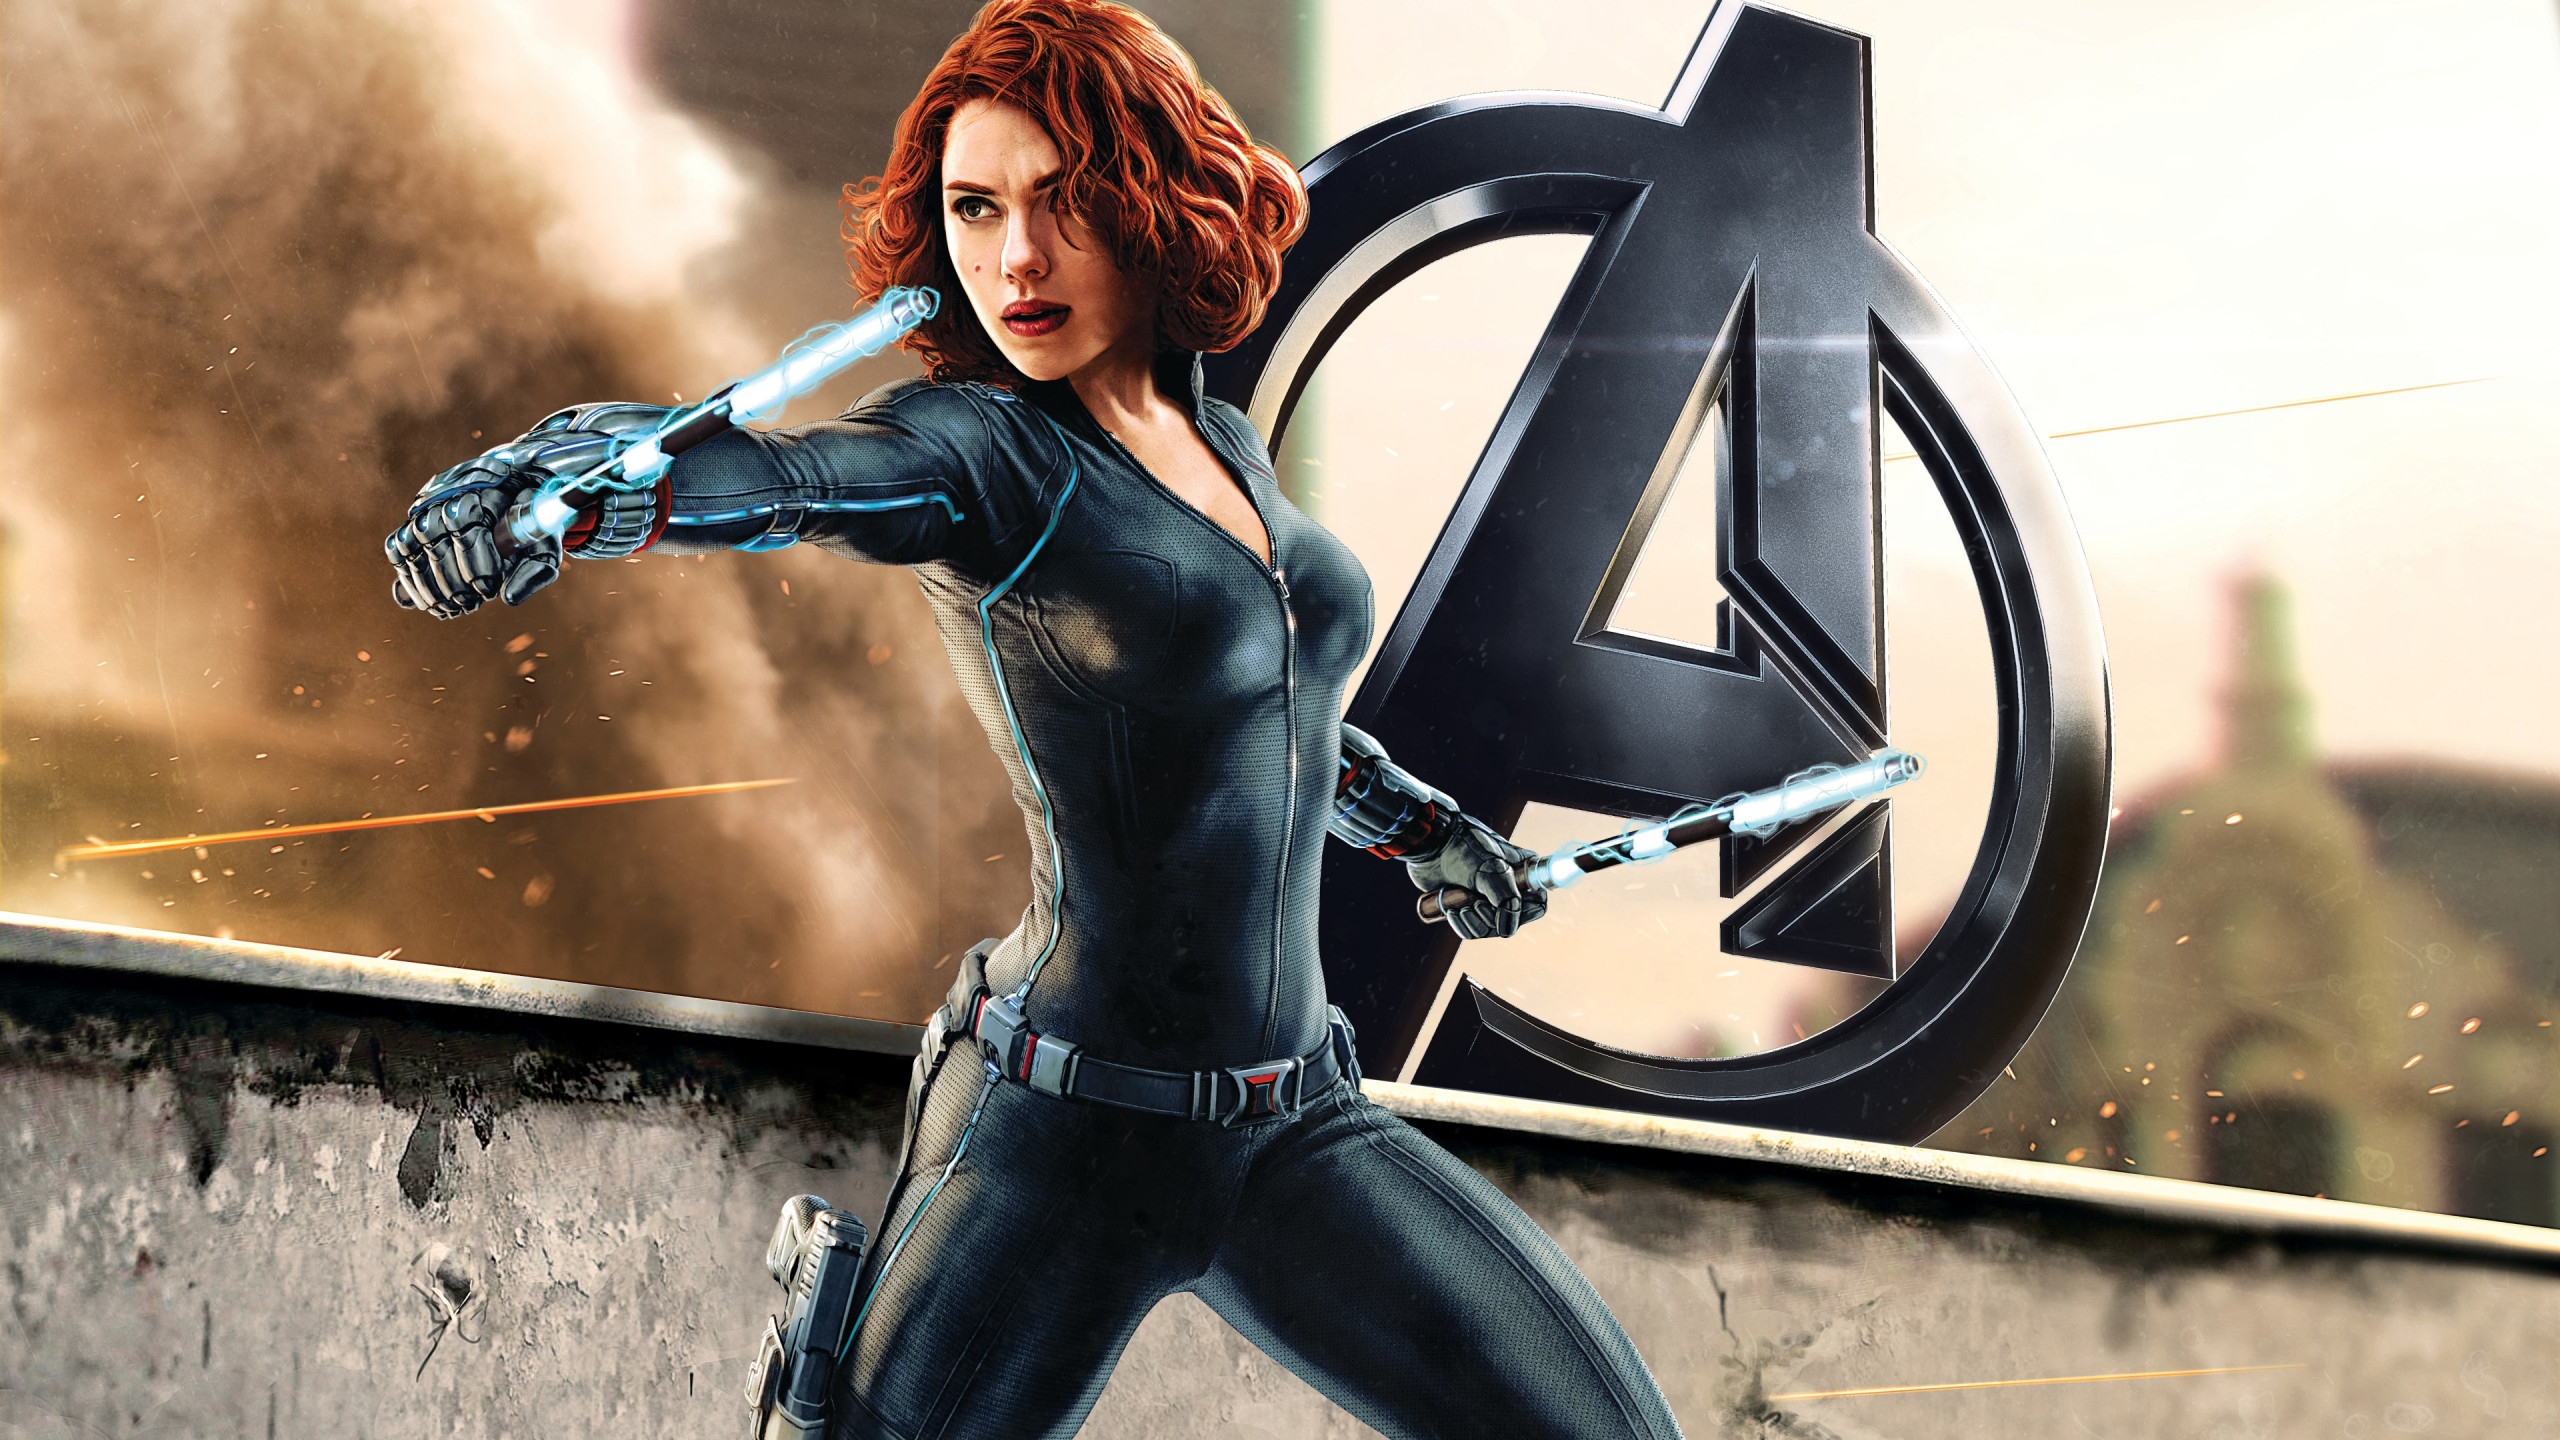 Black Widow in Avengers wallpaper 2560x1440